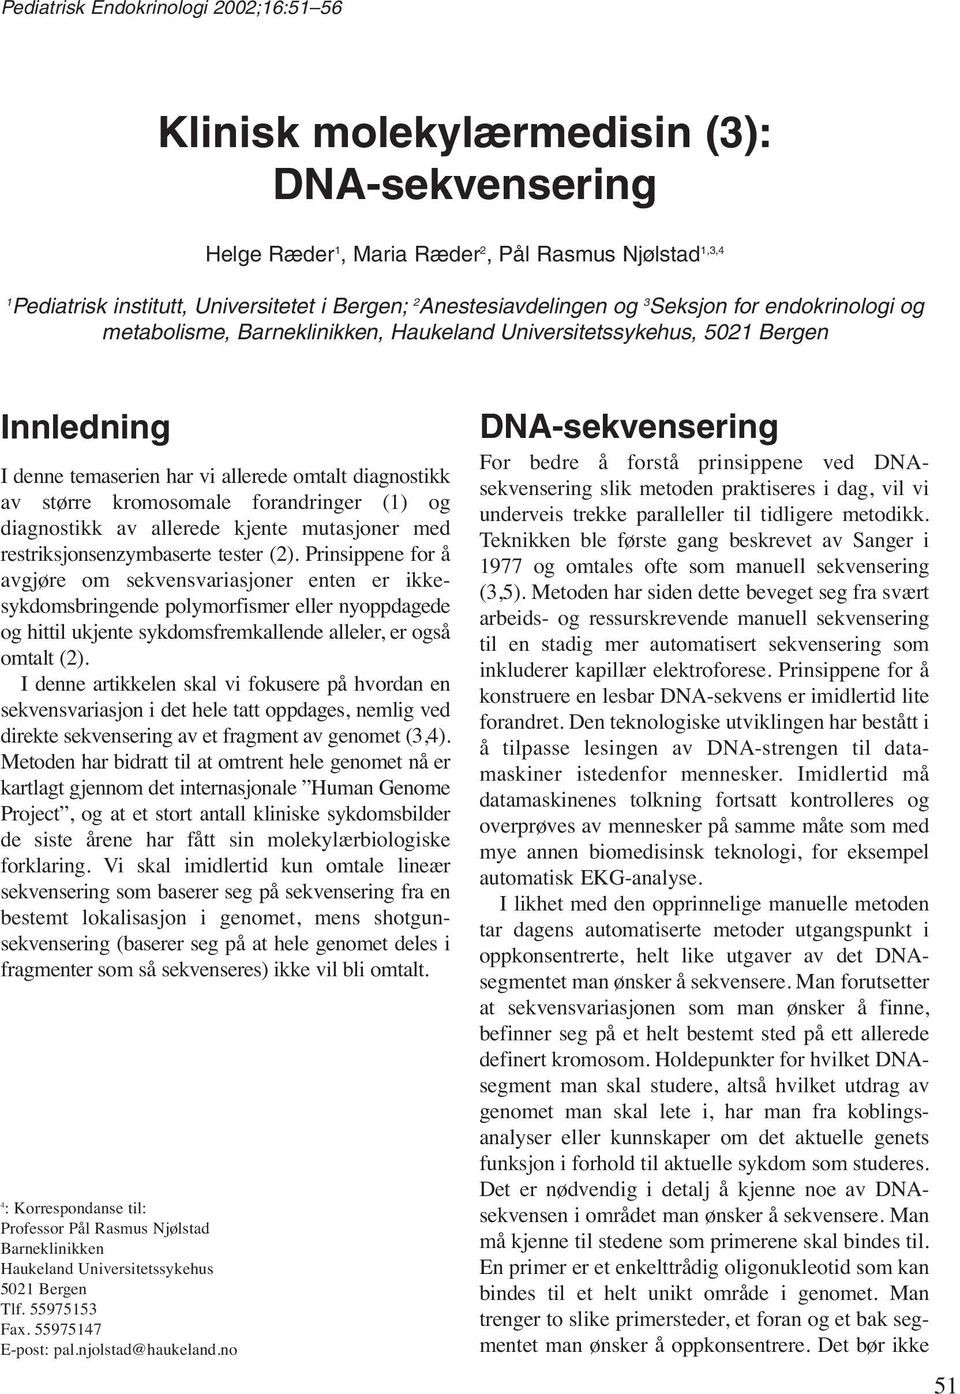 kromosomale forandringer (1) og diagnostikk av allerede kjente mutasjoner med restriksjonsenzymbaserte tester (2).